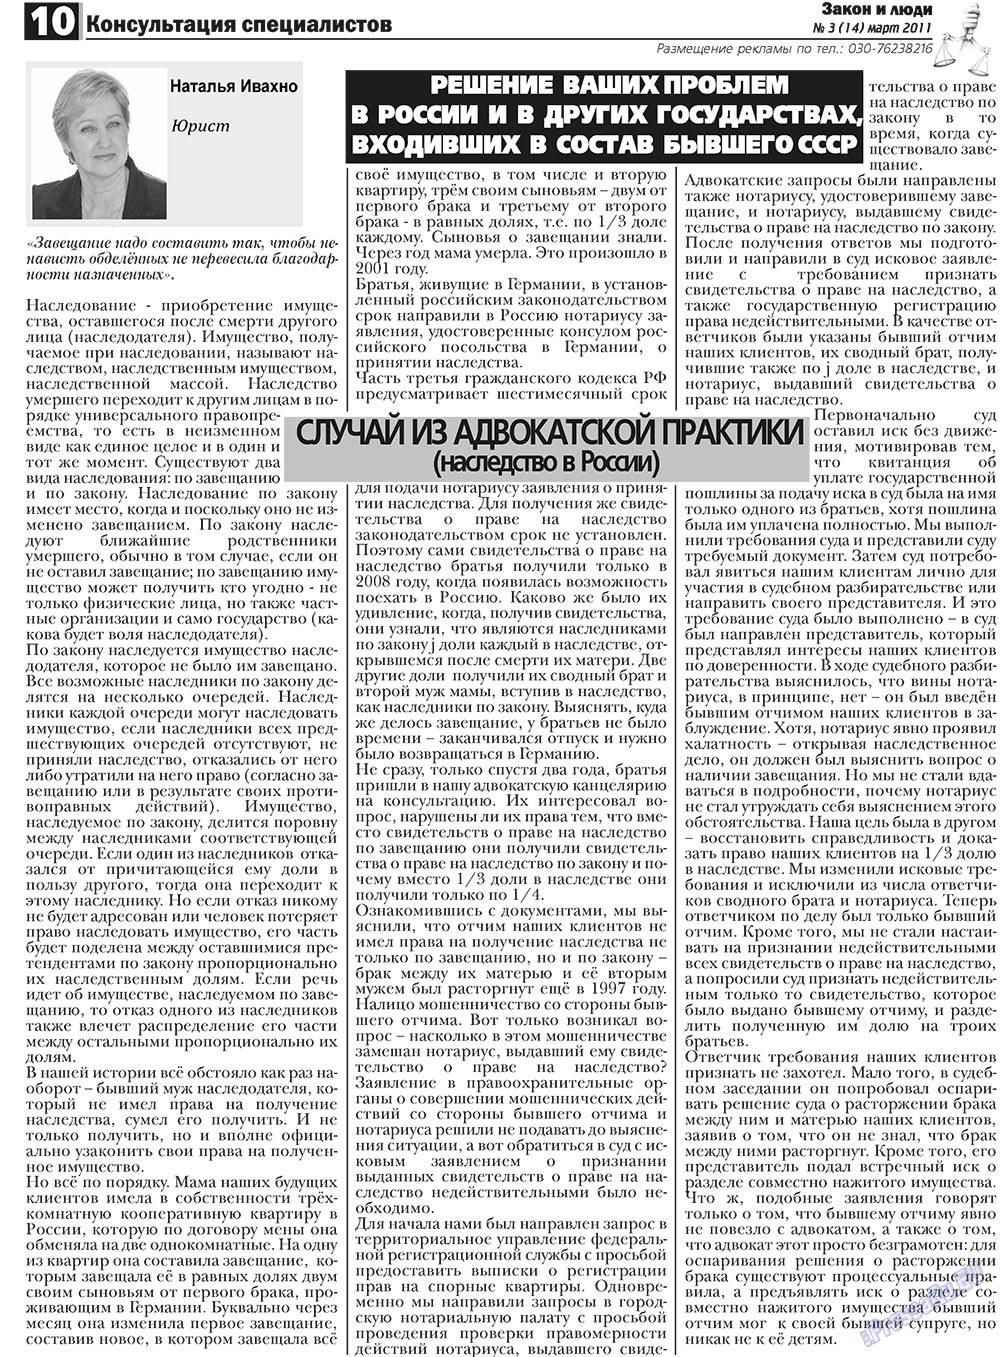 Закон и люди, газета. 2011 №3 стр.10